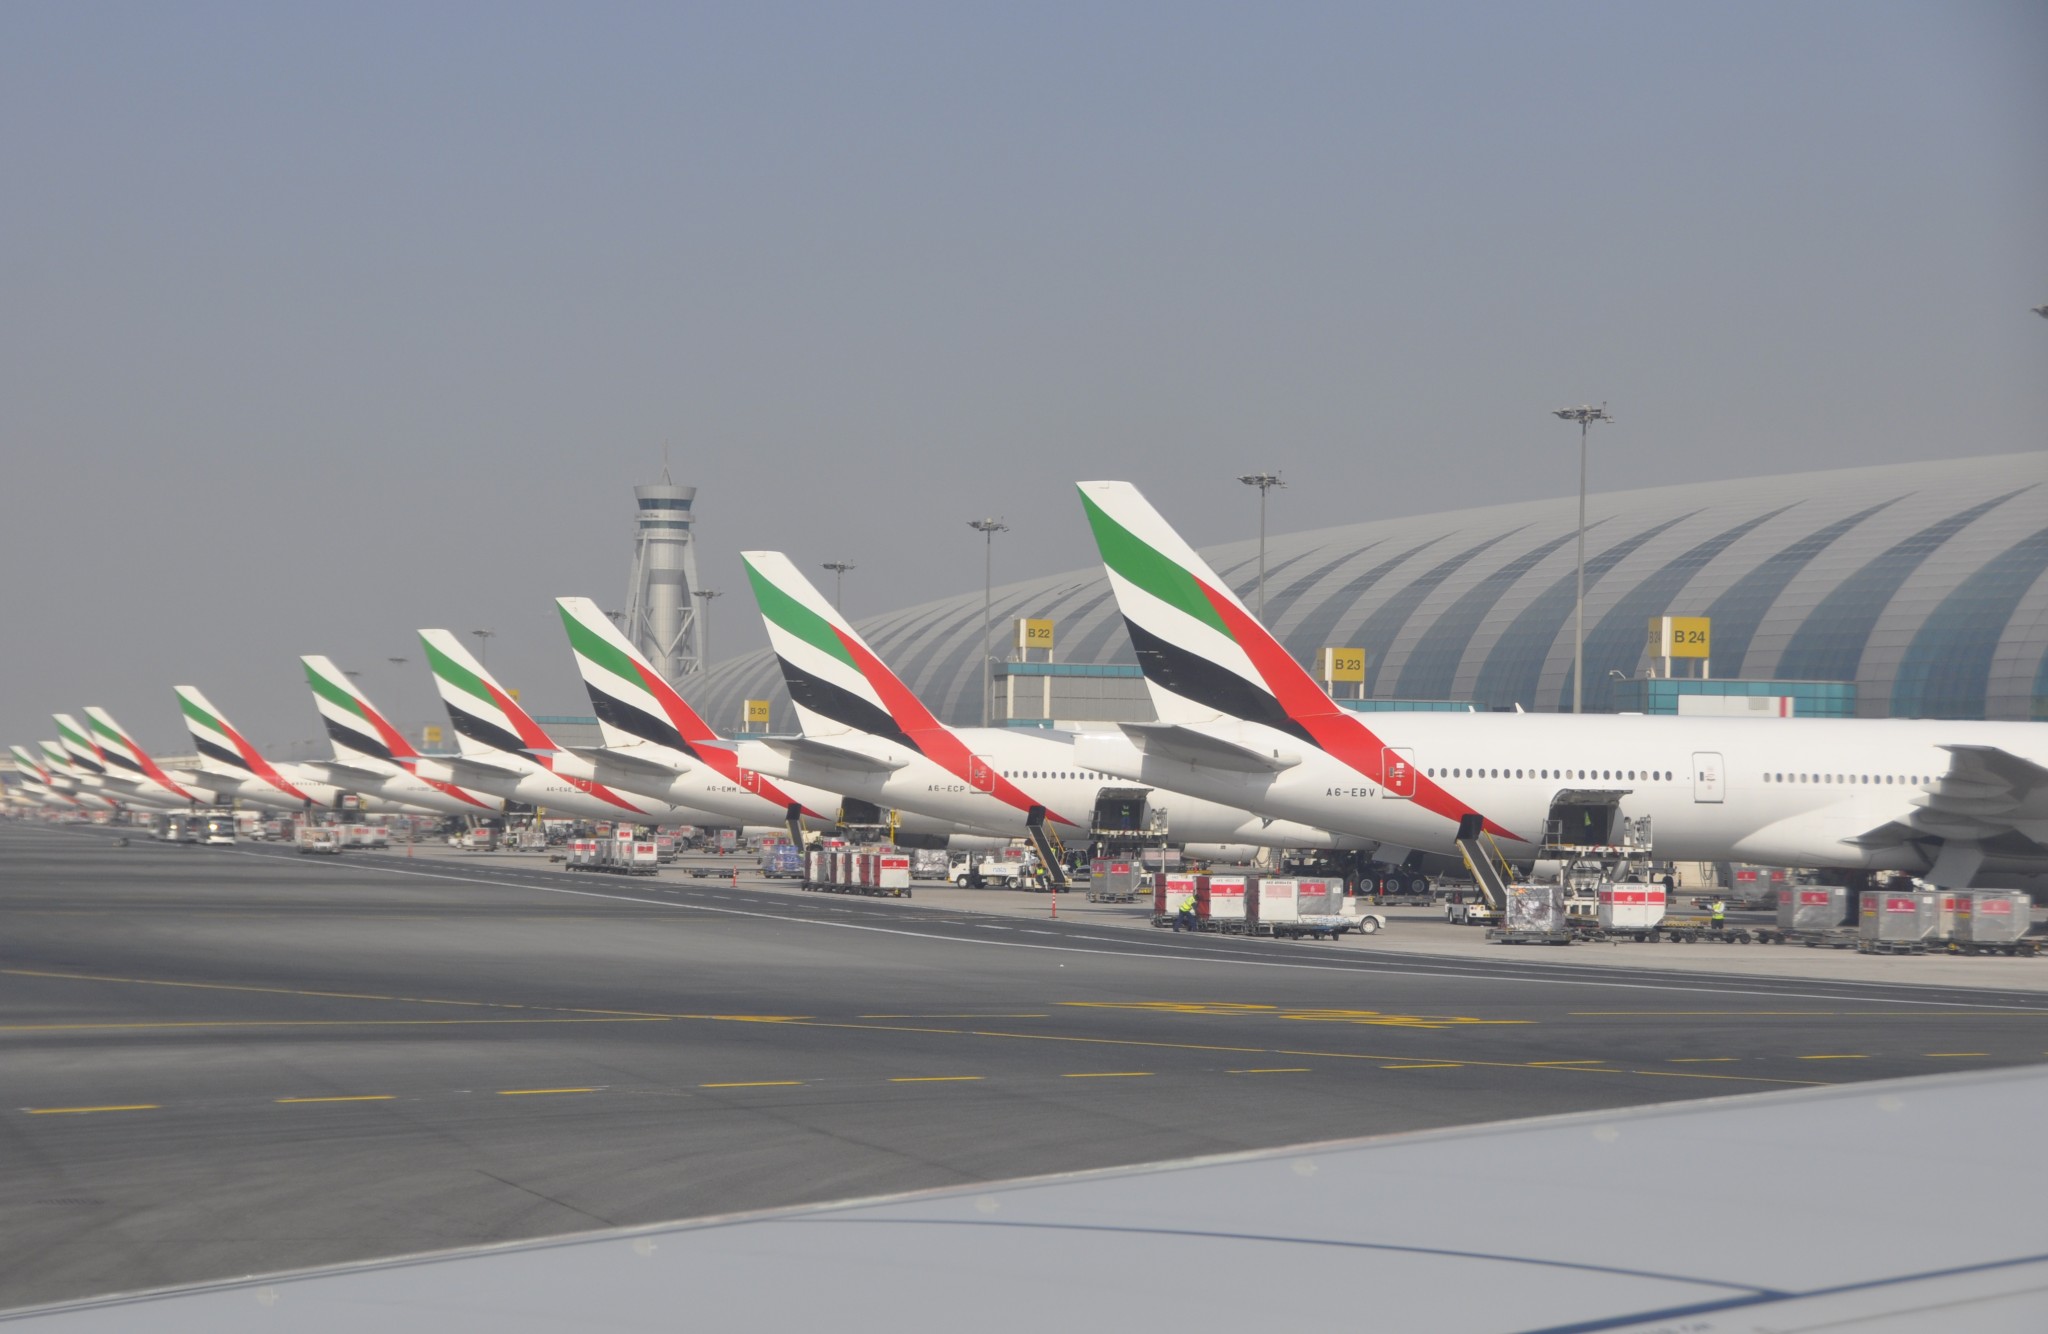 Emirates 777-300 crashes on landing in Dubai